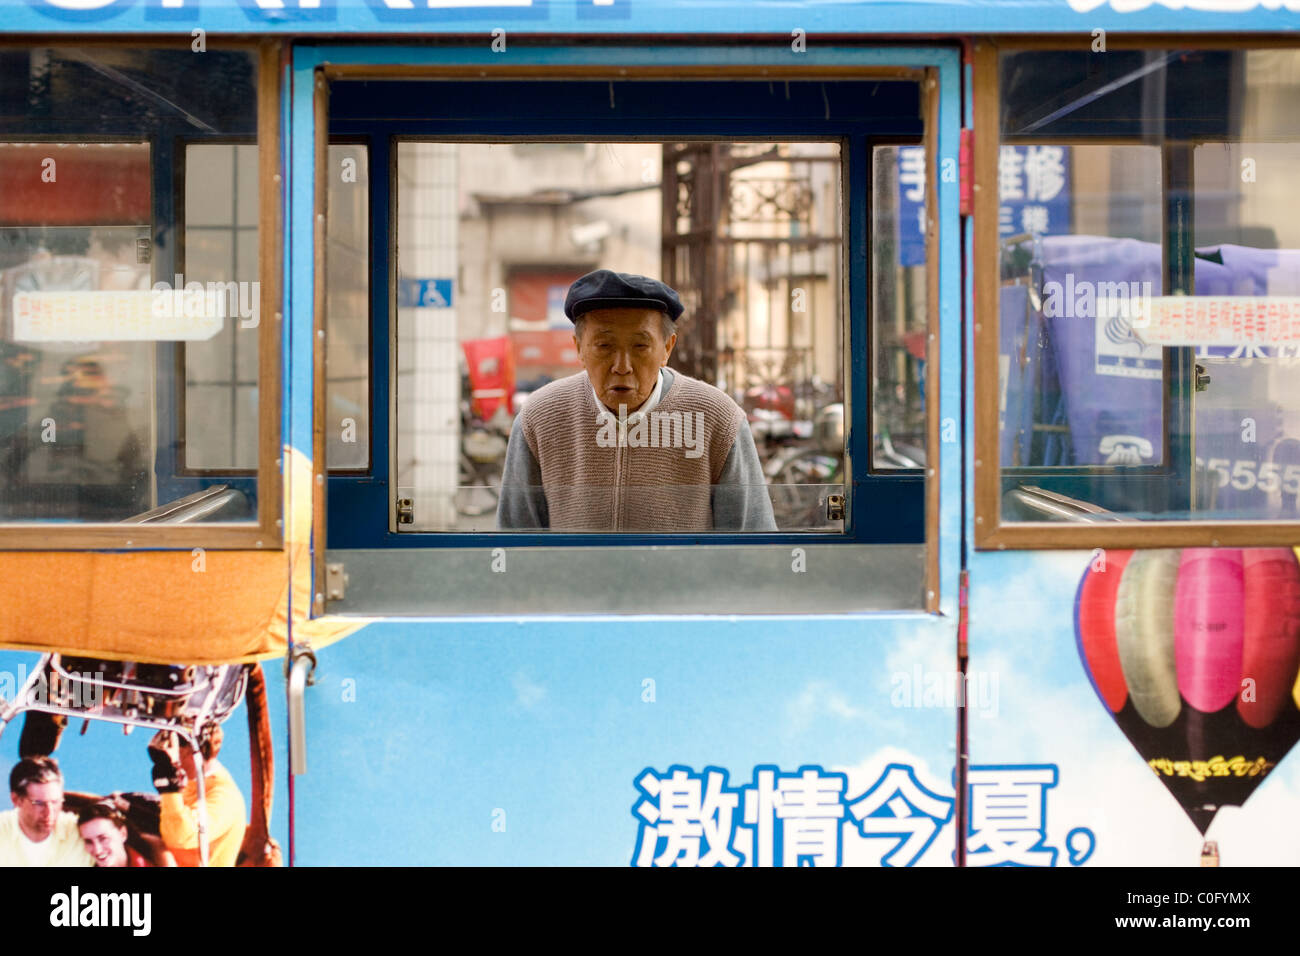 Old Chinese Man at Nanjing street, Shanghai, China Stock Photo